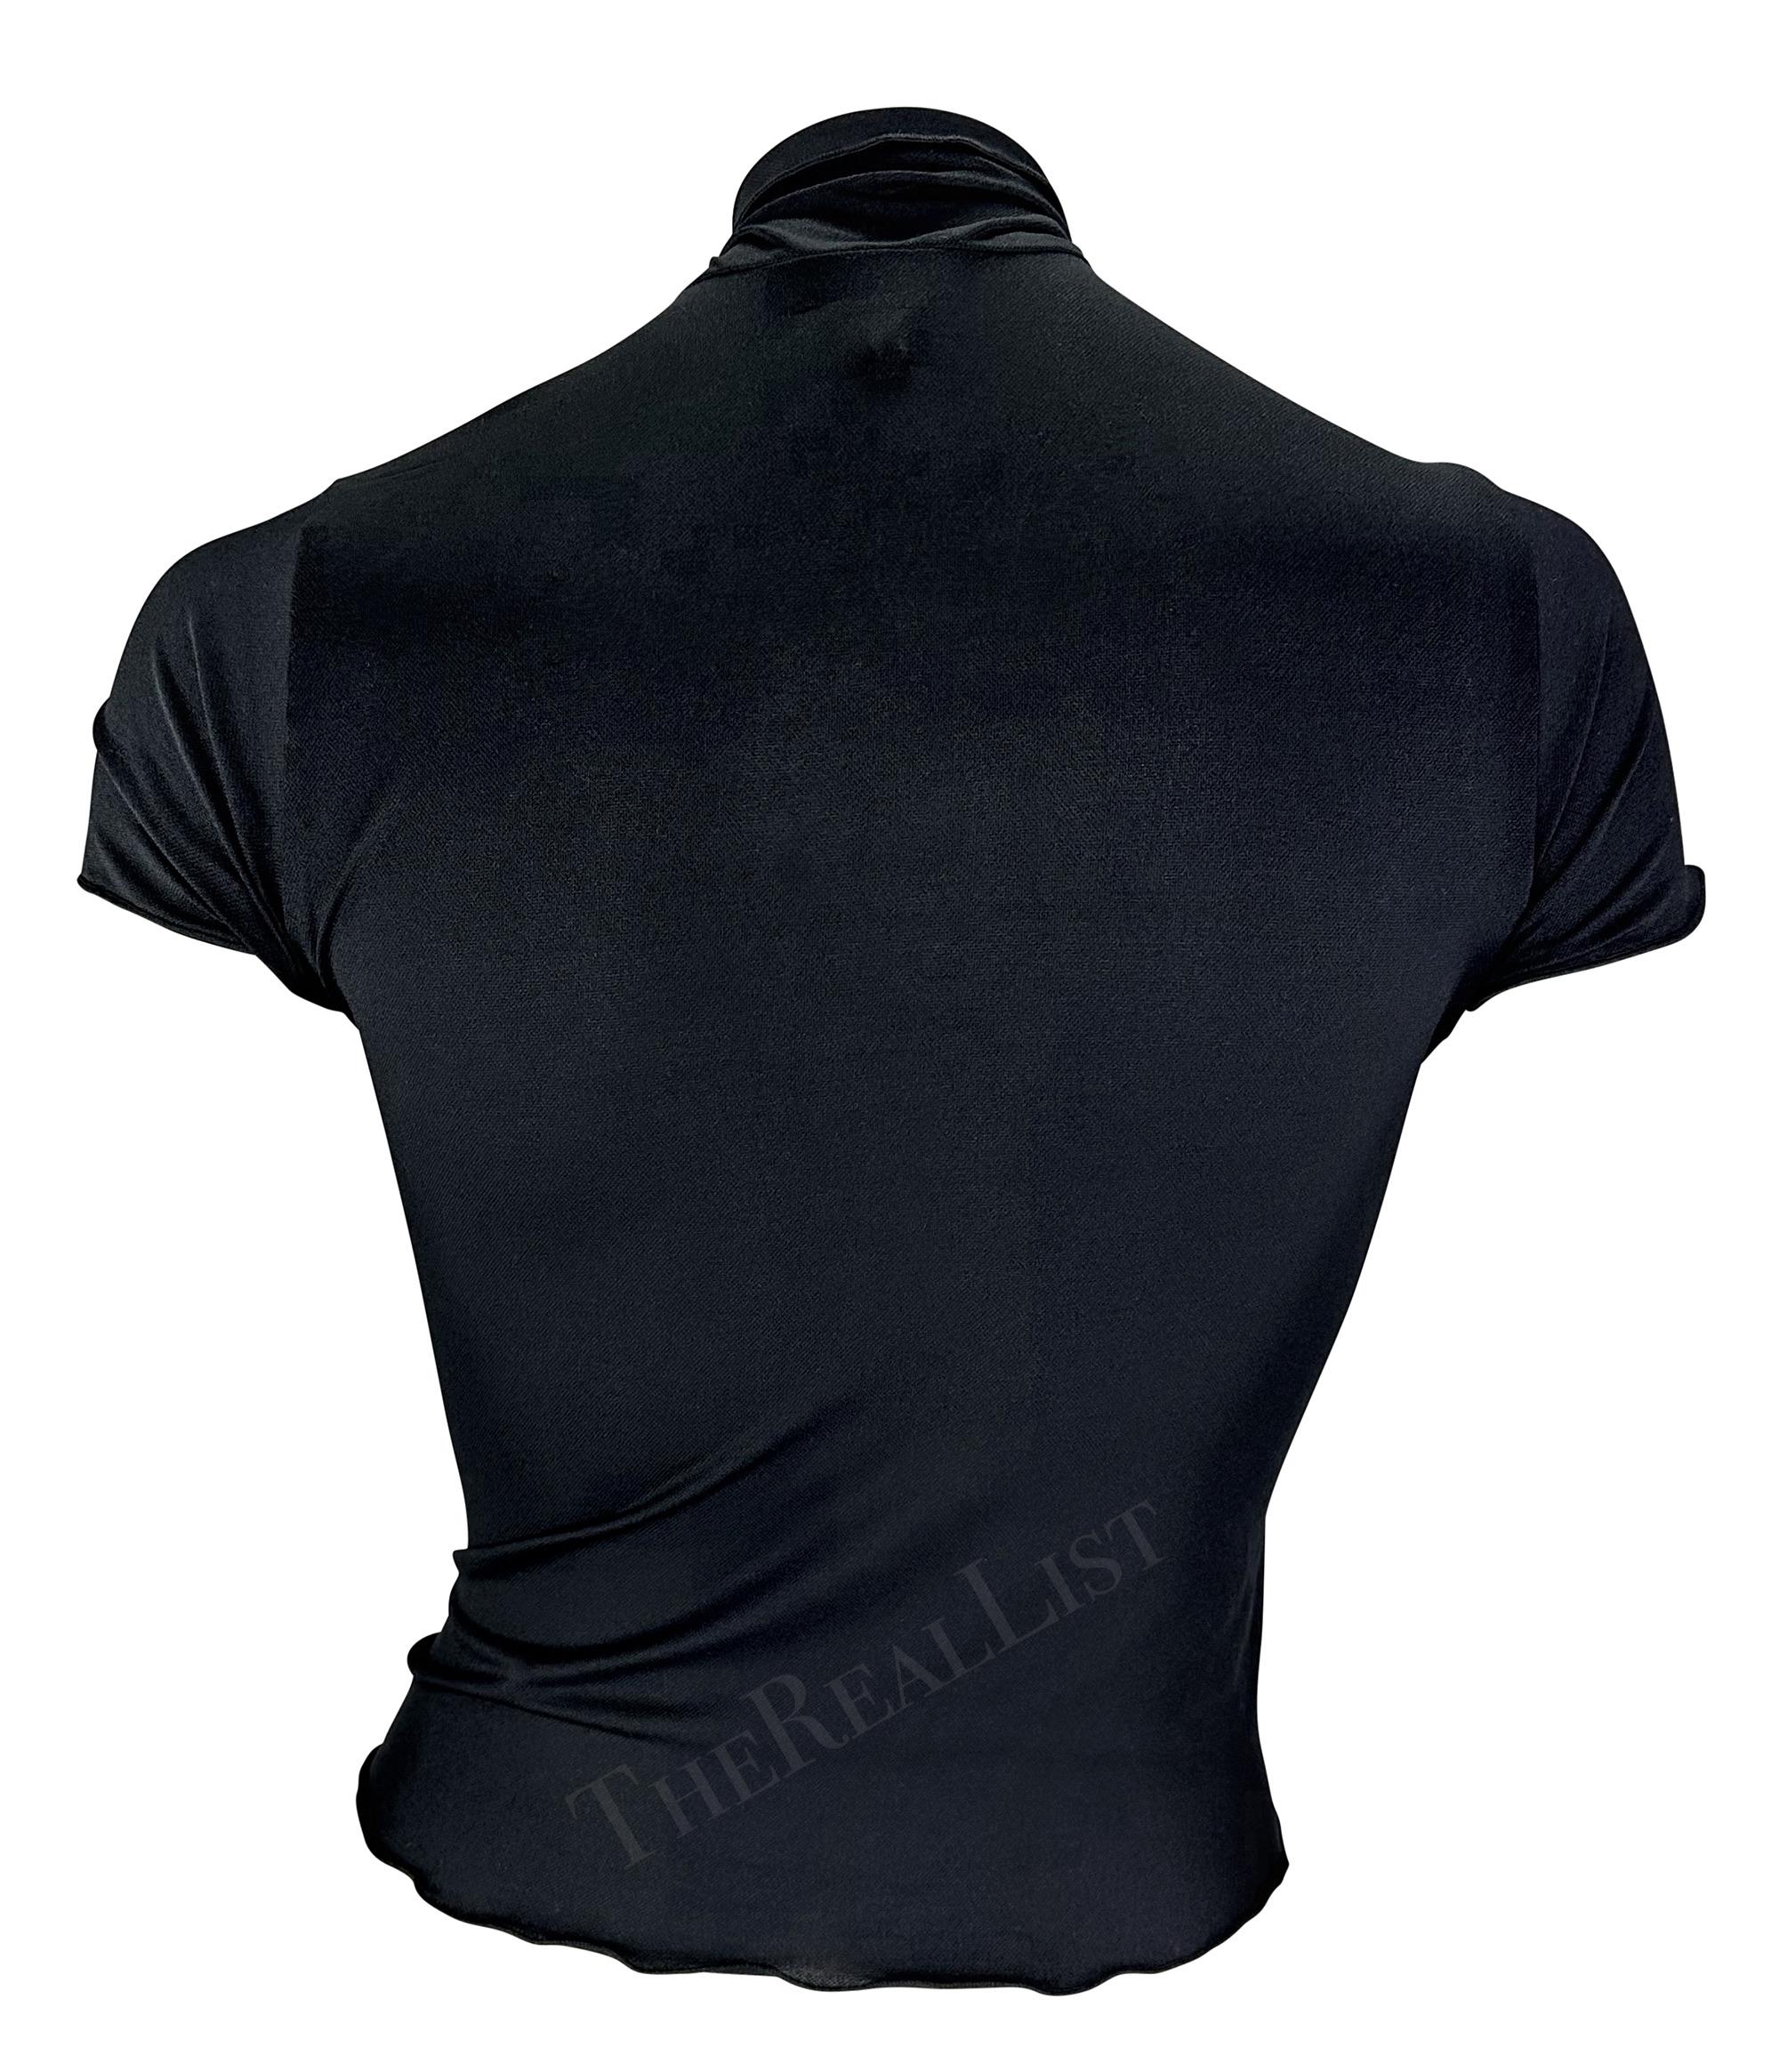 F/S 2001 Anna Sui Krawatte vorne Stretch Bodycon Cutout Schwarzes T-Shirt 2